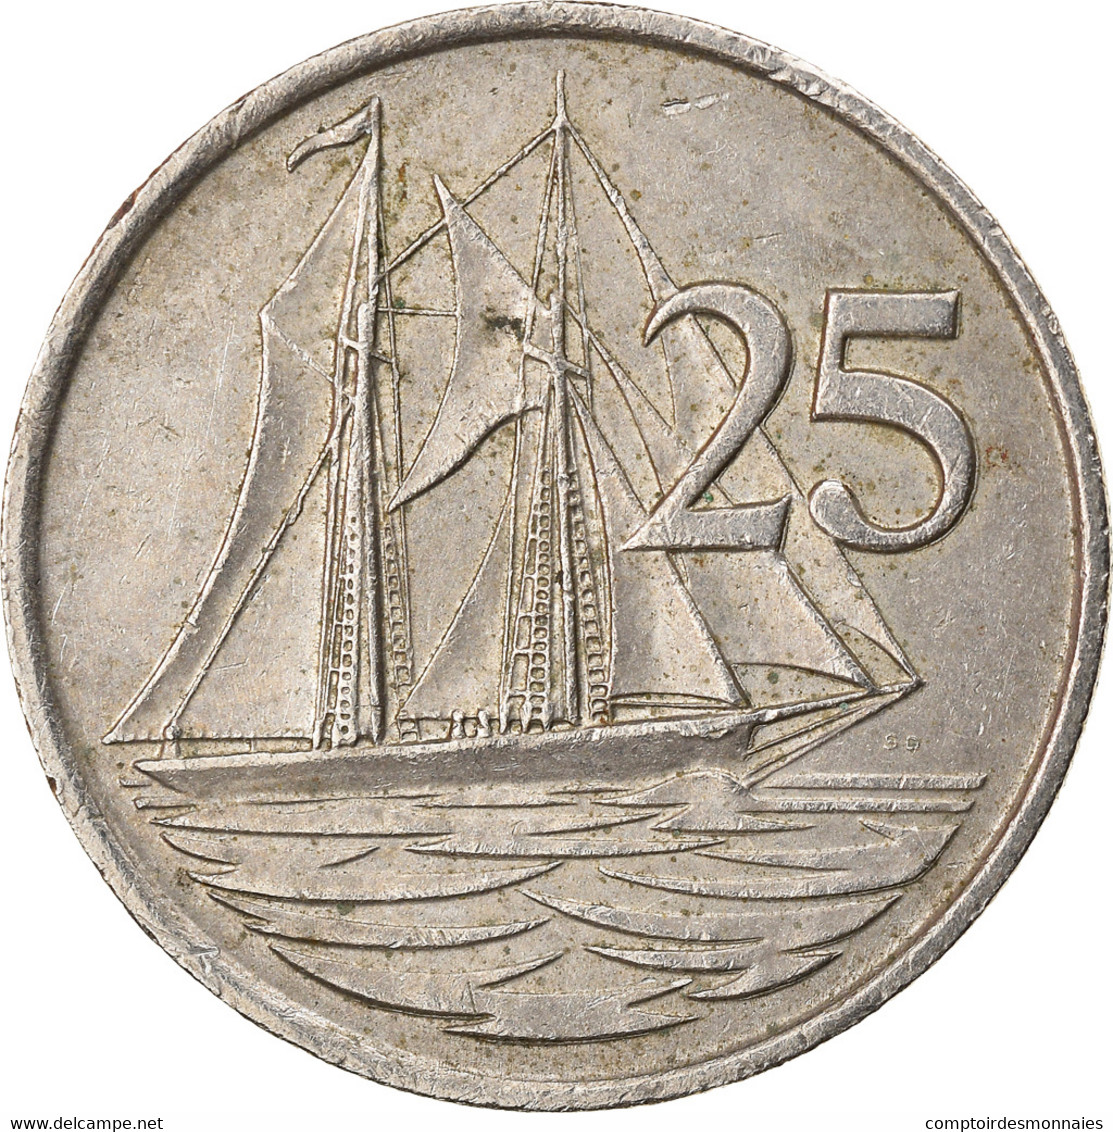 Monnaie, Îles Caïmans, 25 Cents, 1987, TTB, Copper-nickel, KM:90 - Cayman Islands